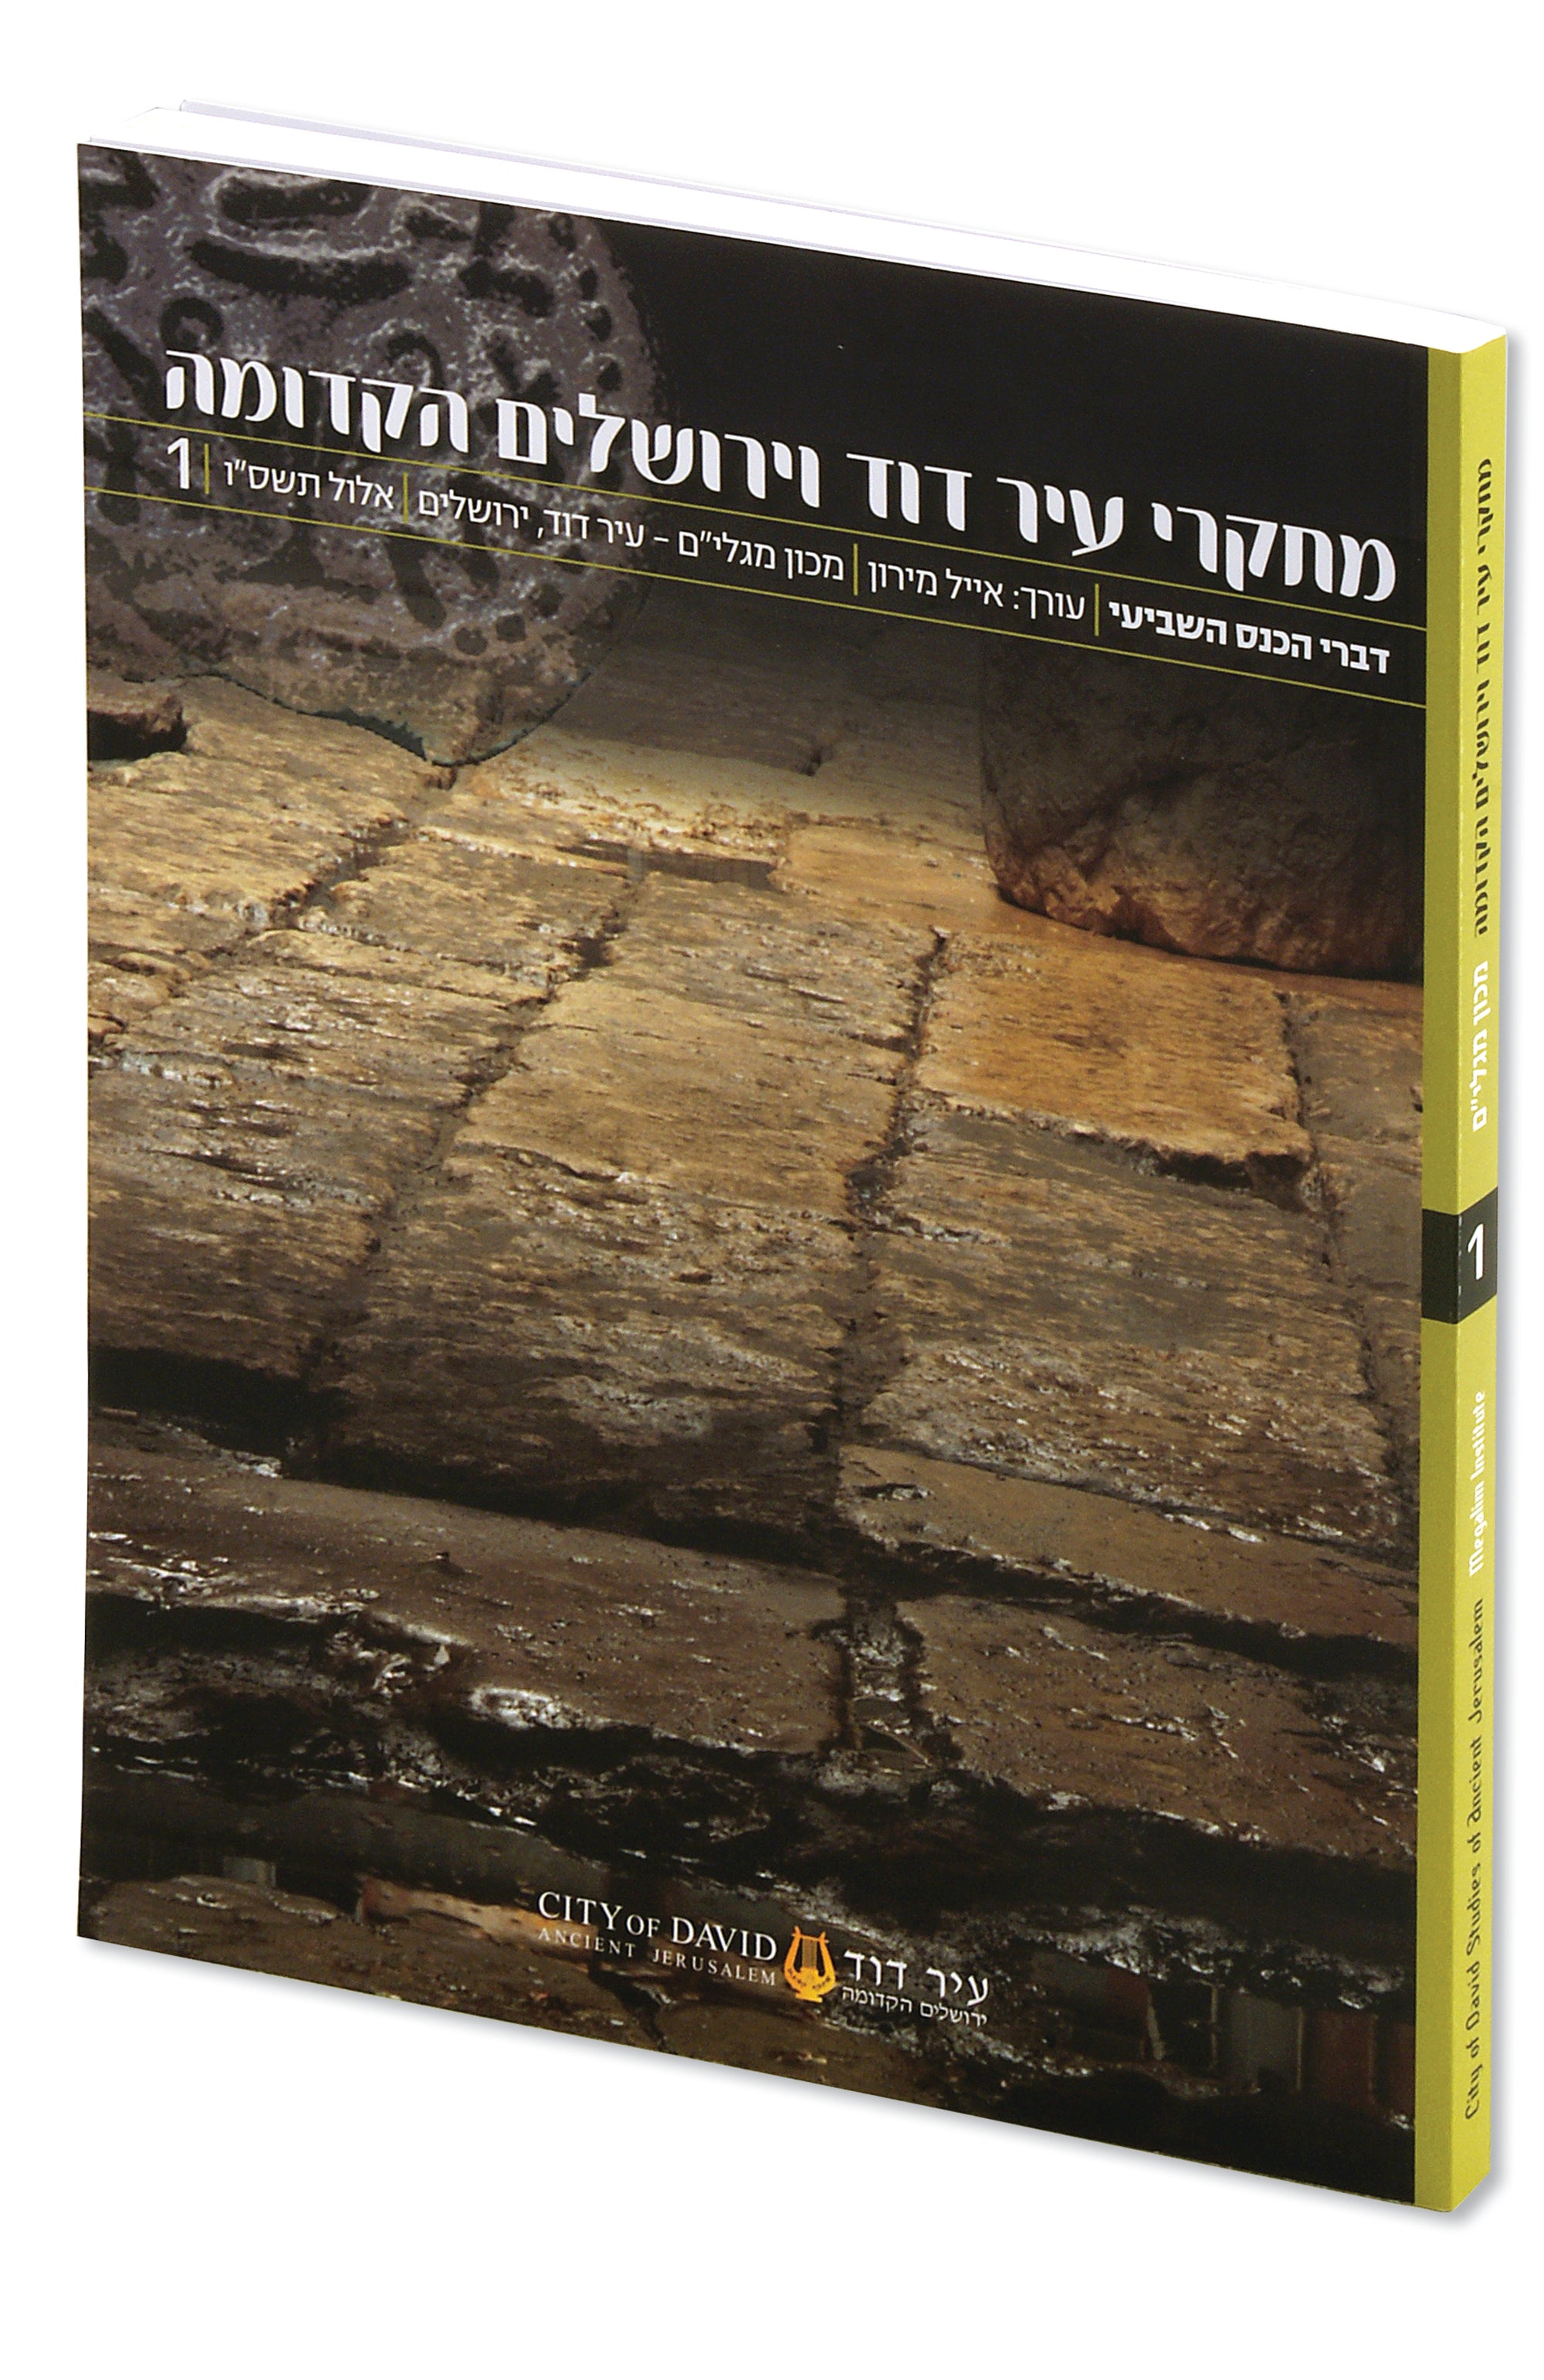 מאסופת מאמרי כנס מחקרי עיר דוד וירושלים הקדומה - כרך ראשון